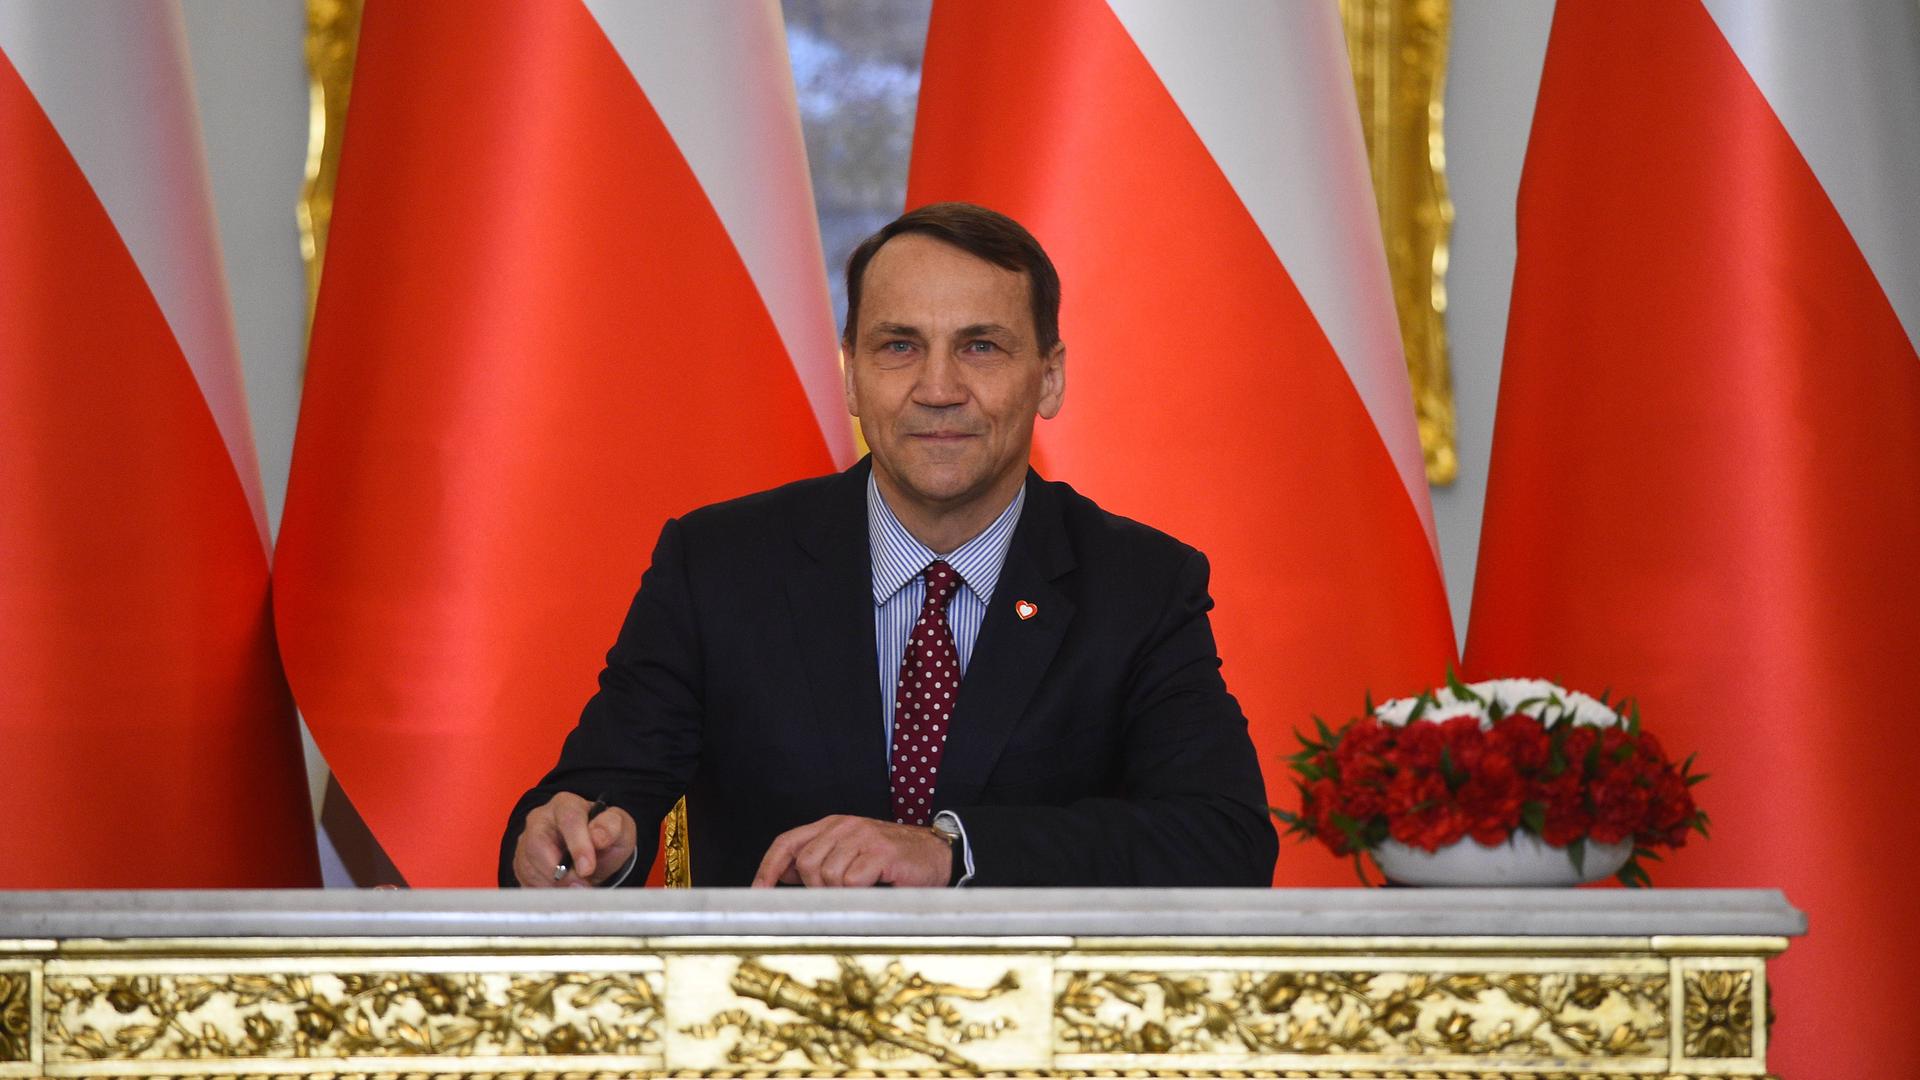 Der polnische Innenminister Sikorski sitzt an einem Tisch vor polnischen Flaggen.